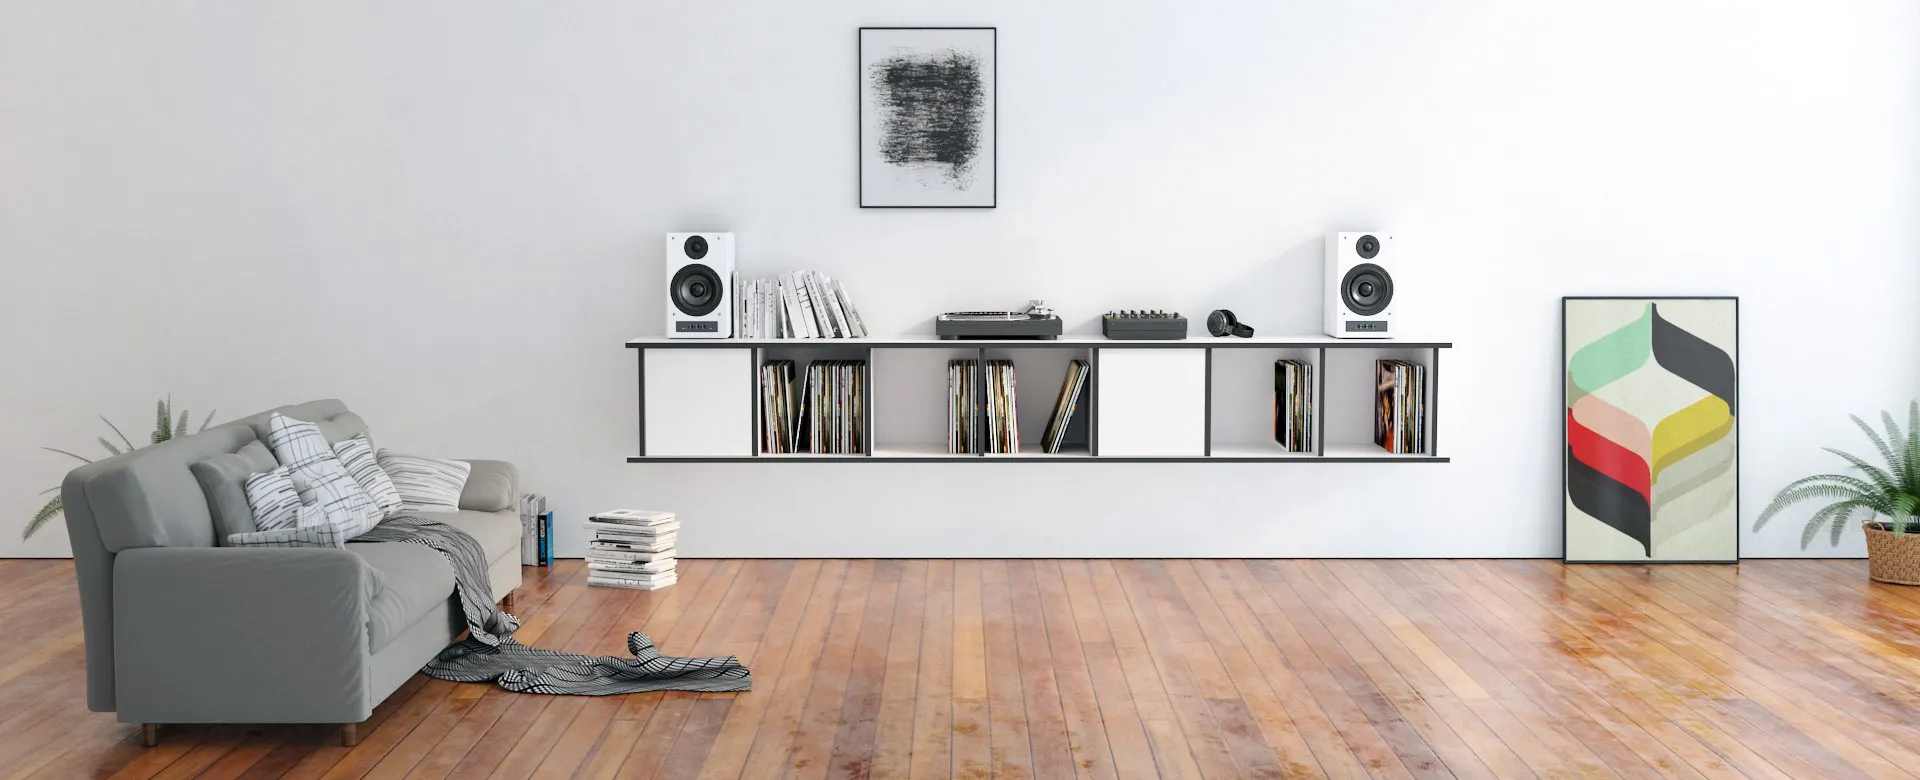 Eine konfigurierbare Schallplatten Aufbewahrung für dein Zuhause